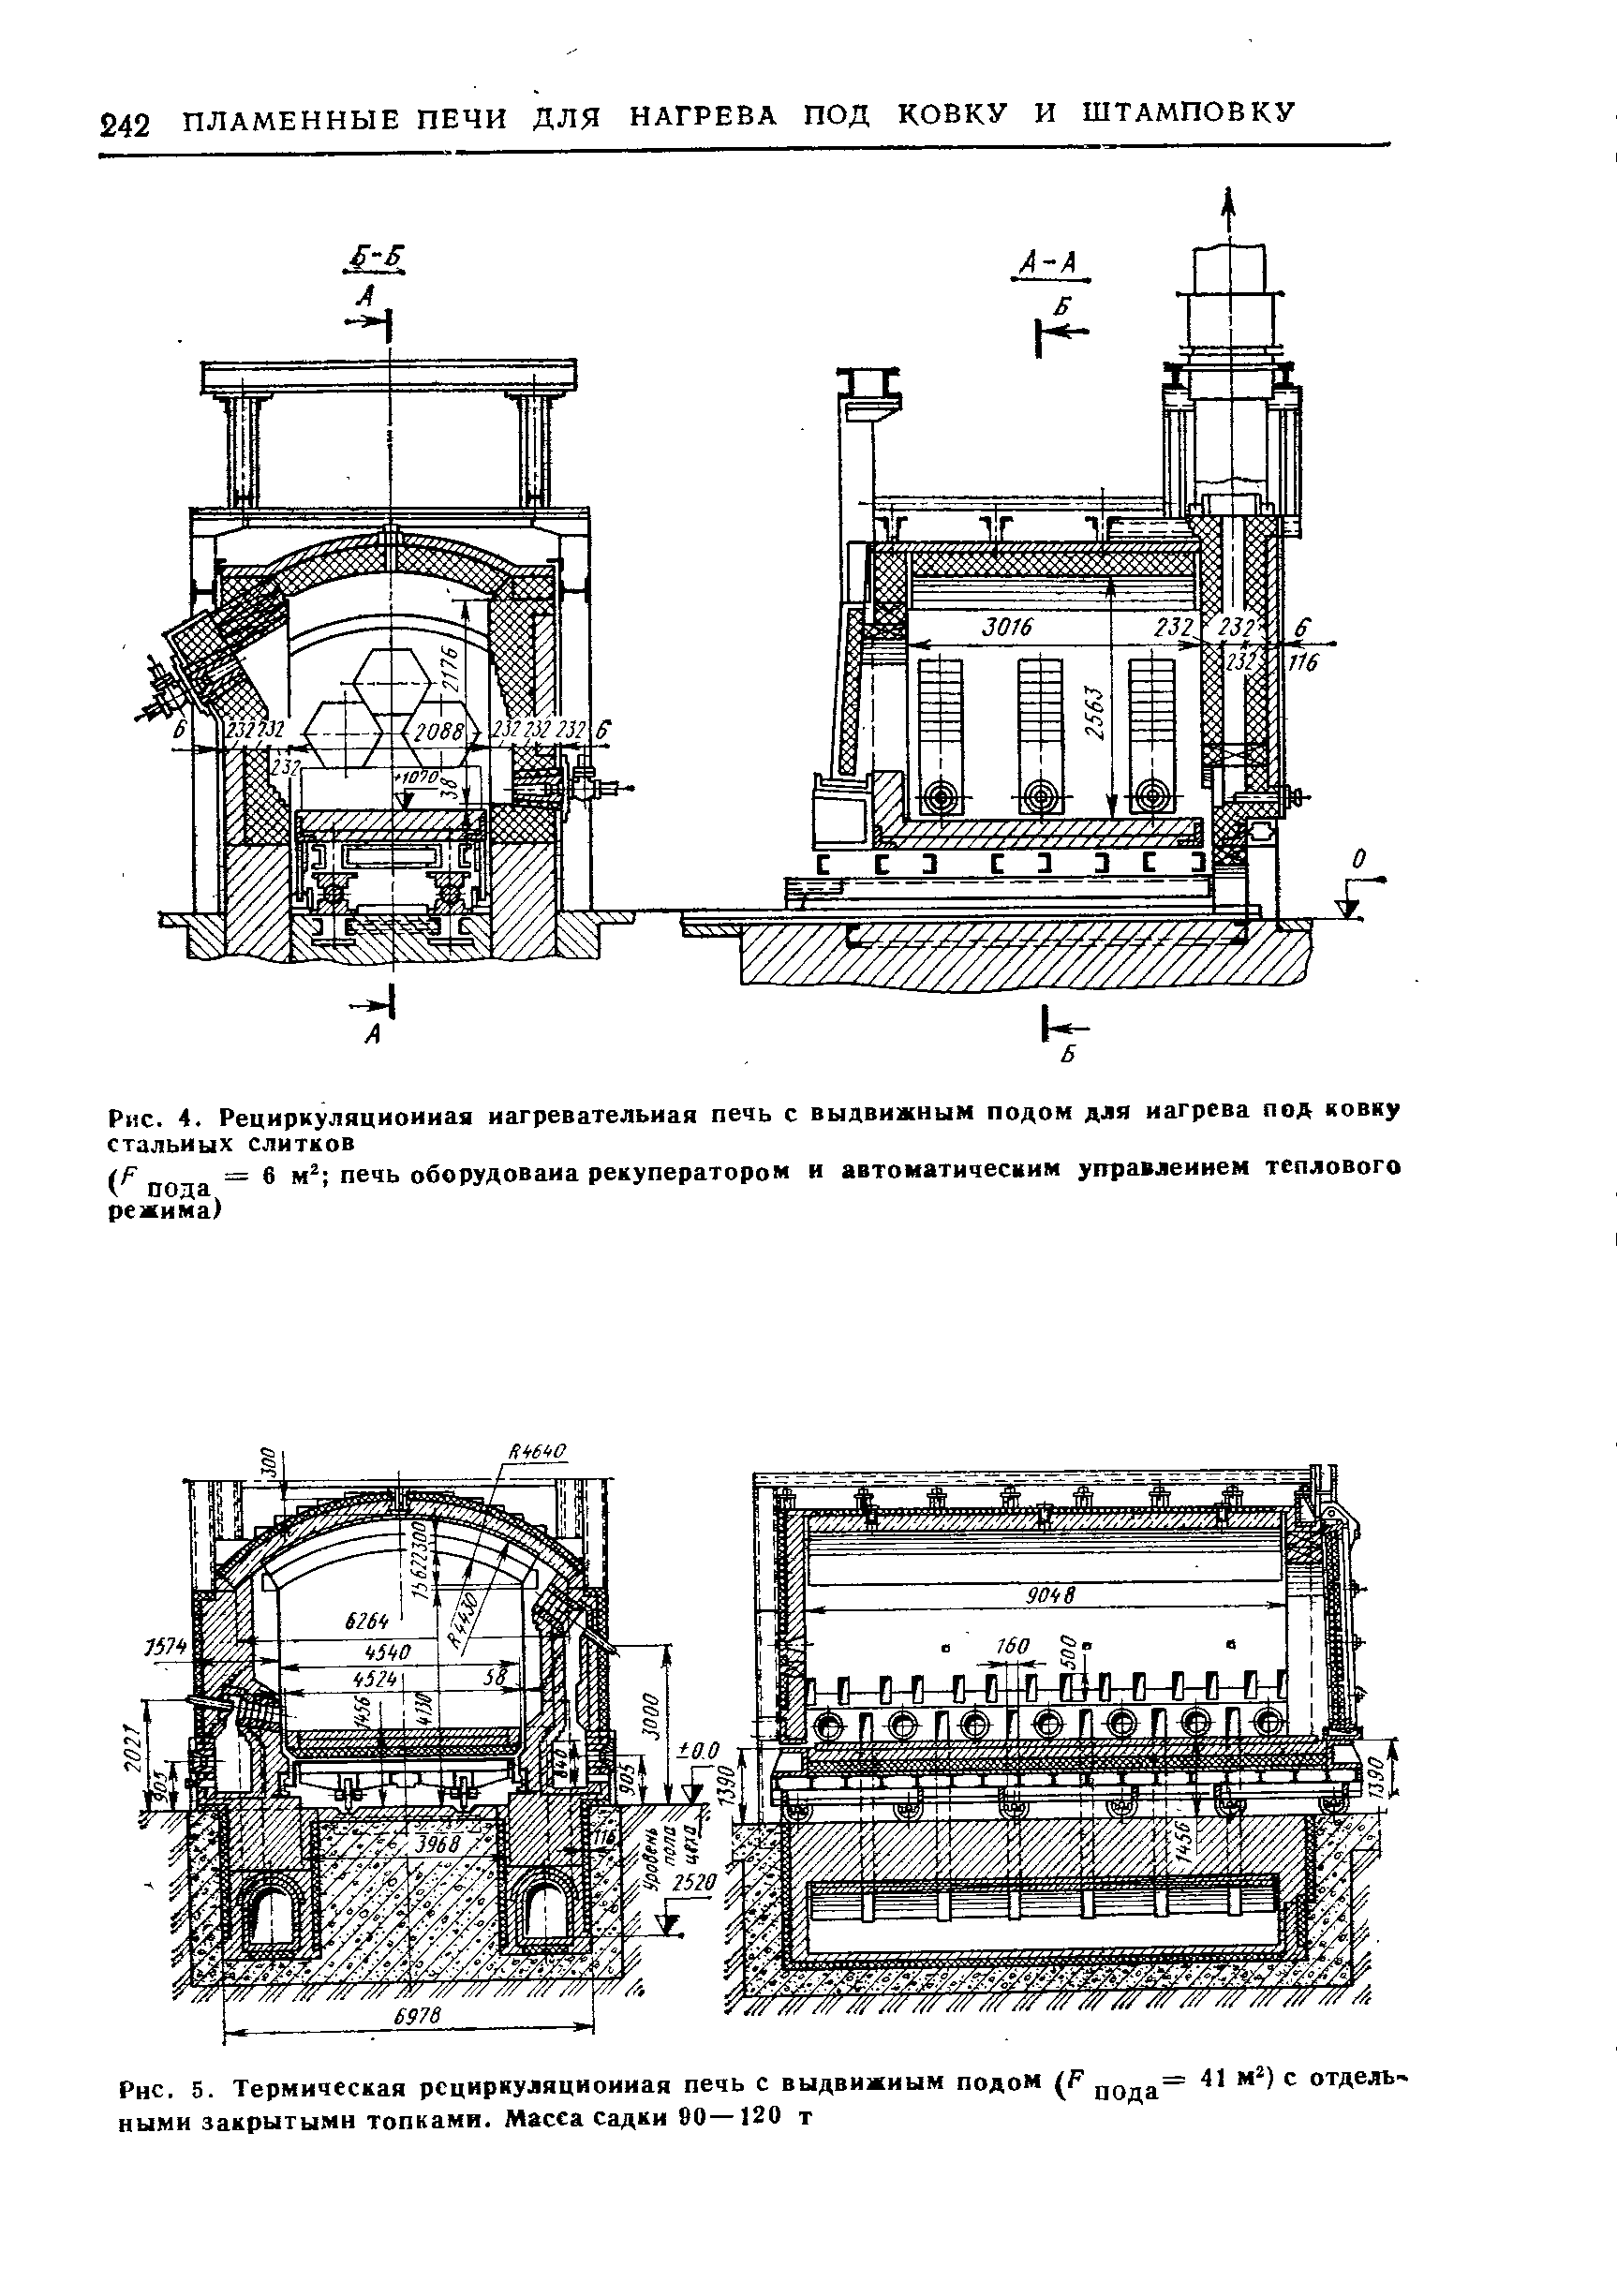 Рис. 4. Рециркуляционная нагревательная печь с выдвижным подом для нагрева под ковку стальных слитков
